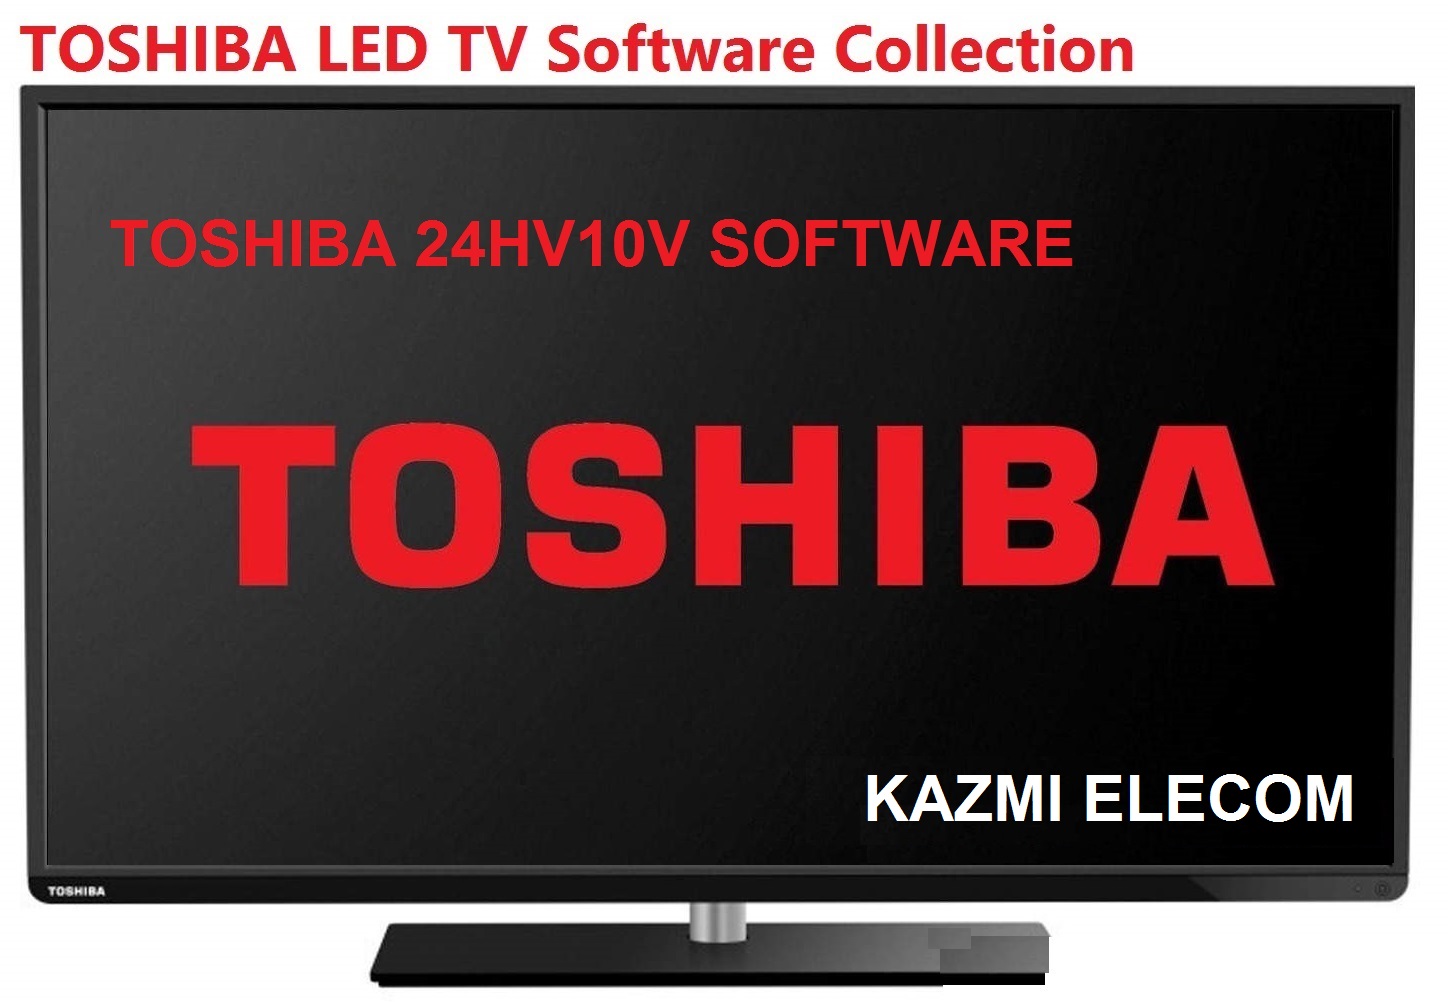 Toshiba 24Hv10V